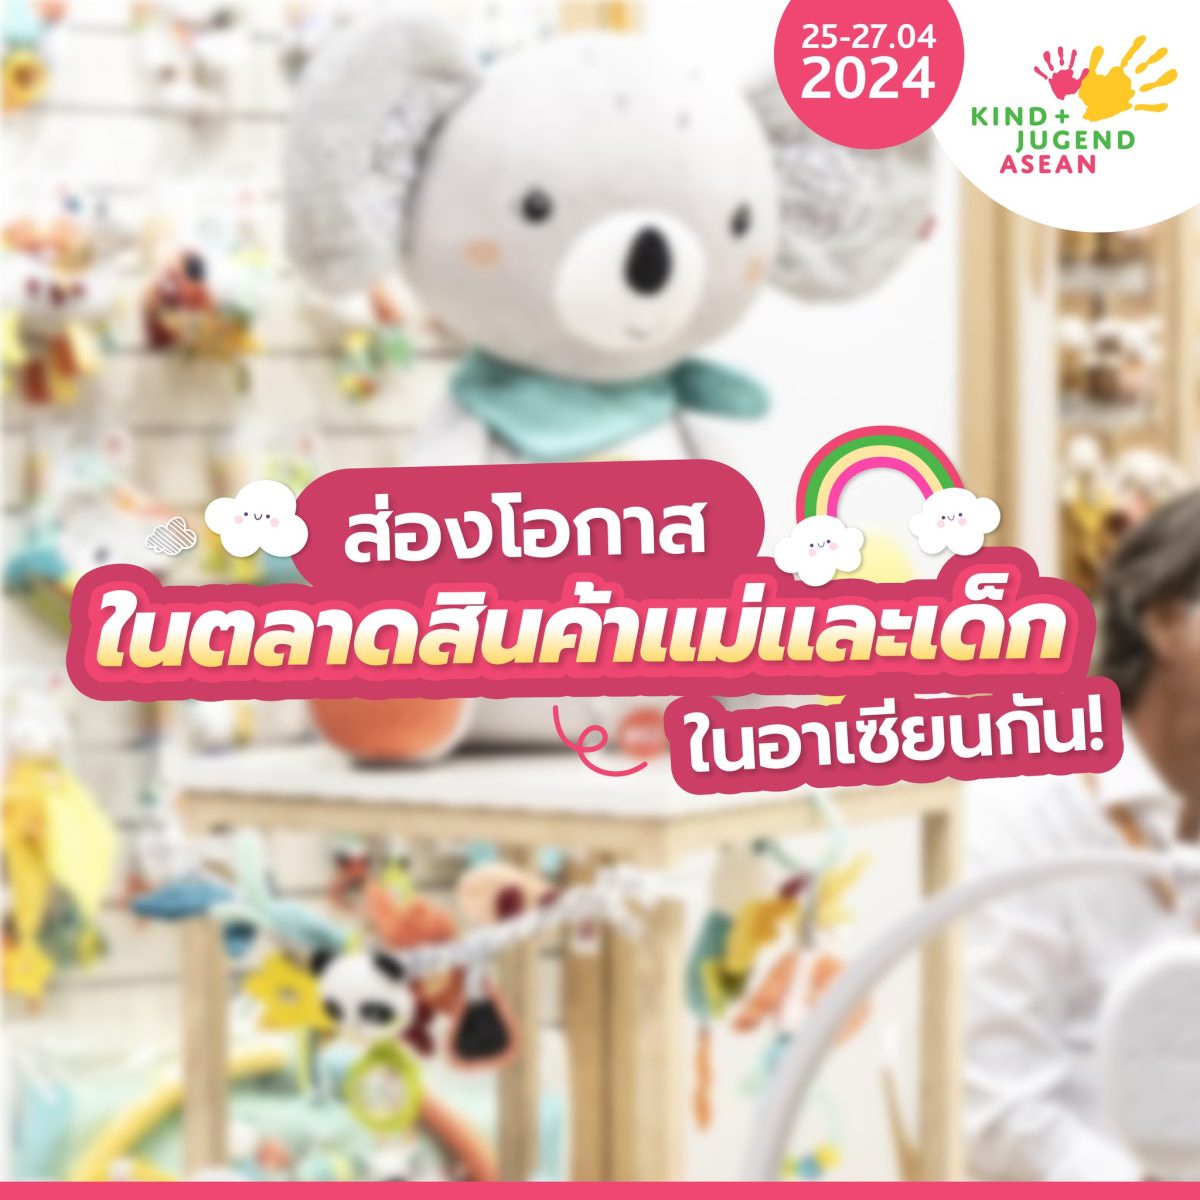 นับถอยหลังเตรียมพบกับ Kind Jugend ASEAN 2024 ระหว่างวันที่ 25 - 27 เมษายน 2567 ลงทะเบียนล่วงหน้า ลุ้นรับ Art Toy จาก POPMART ได้แล้ววันนี้